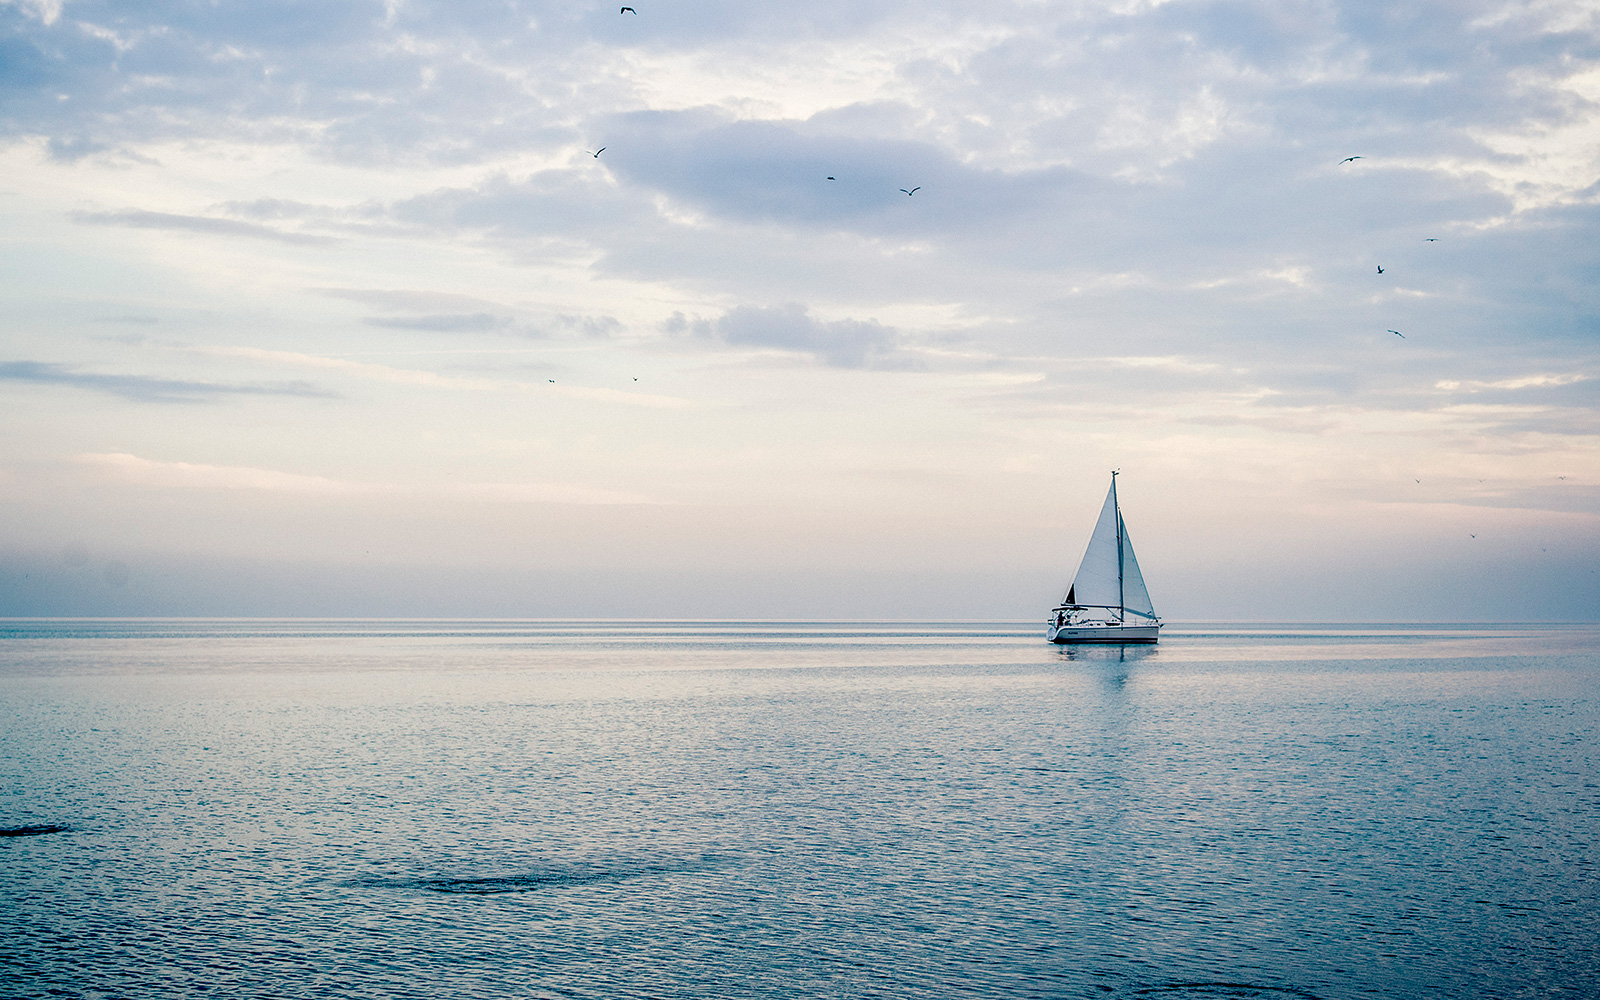 Lake Michigan view and a sailboat on the horizon